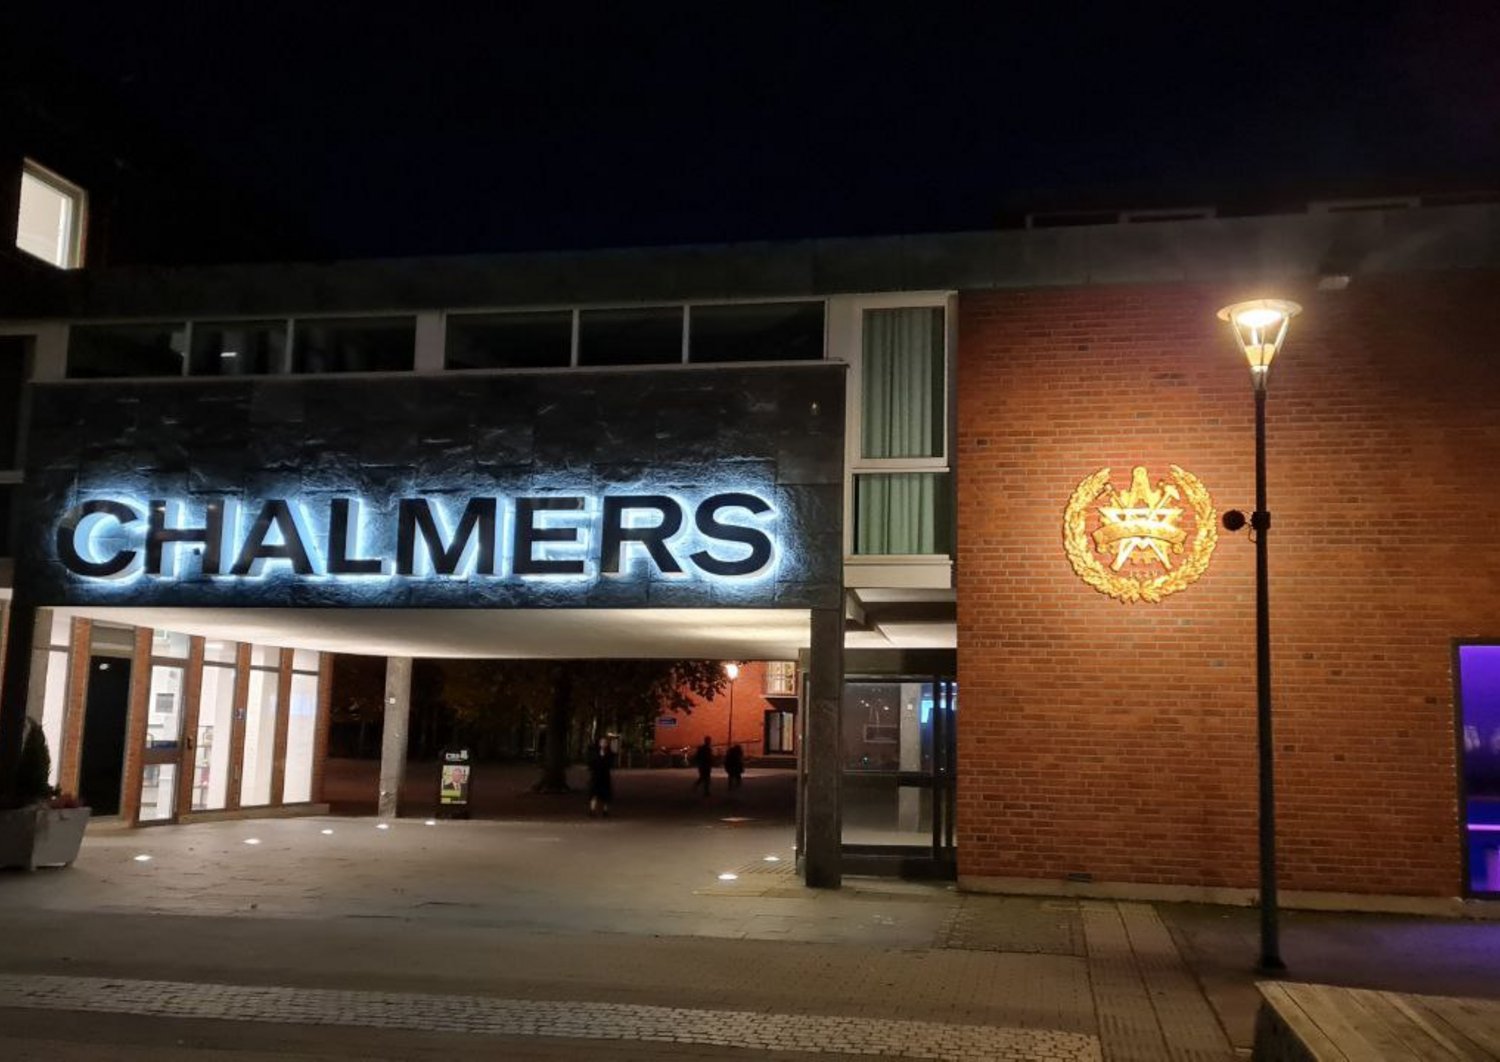 Eingang der Technischen Hochschule Chalmers